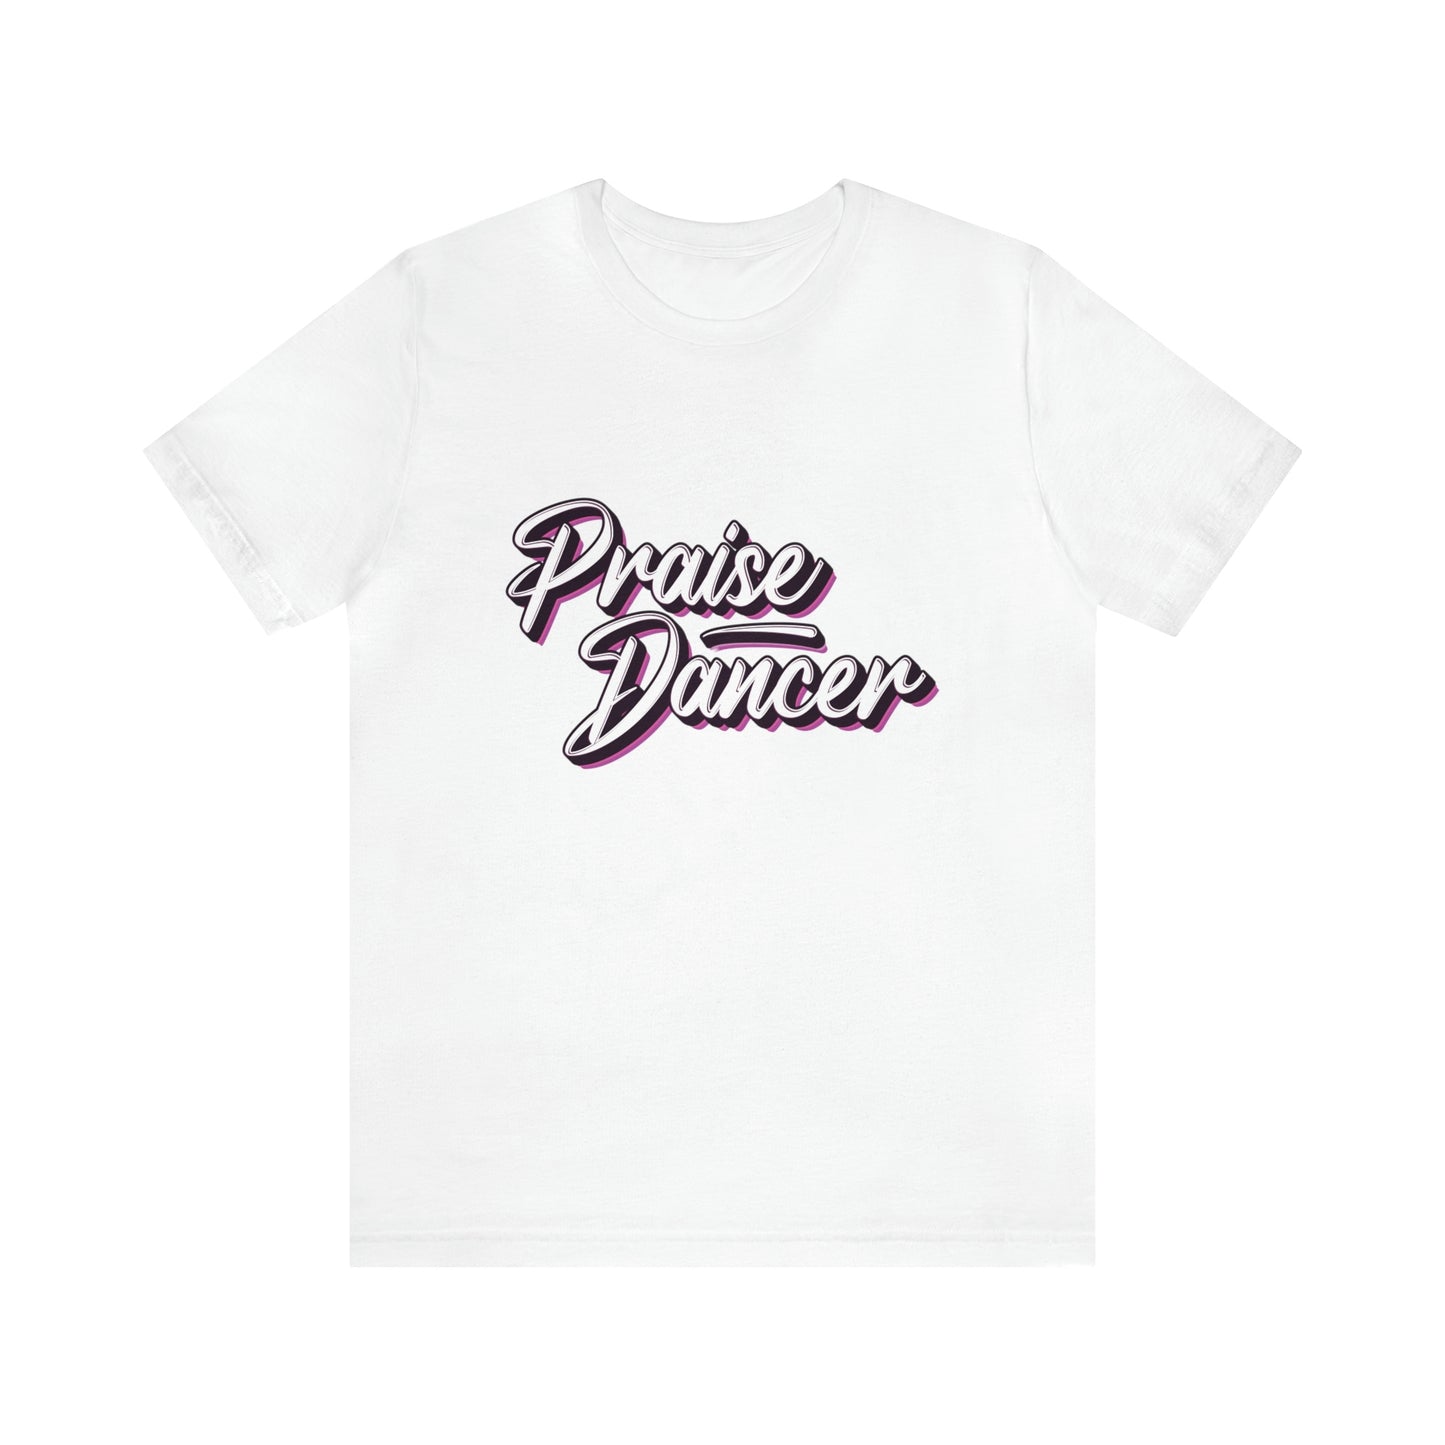 Praise Dance Unisex Jersey T-shirt